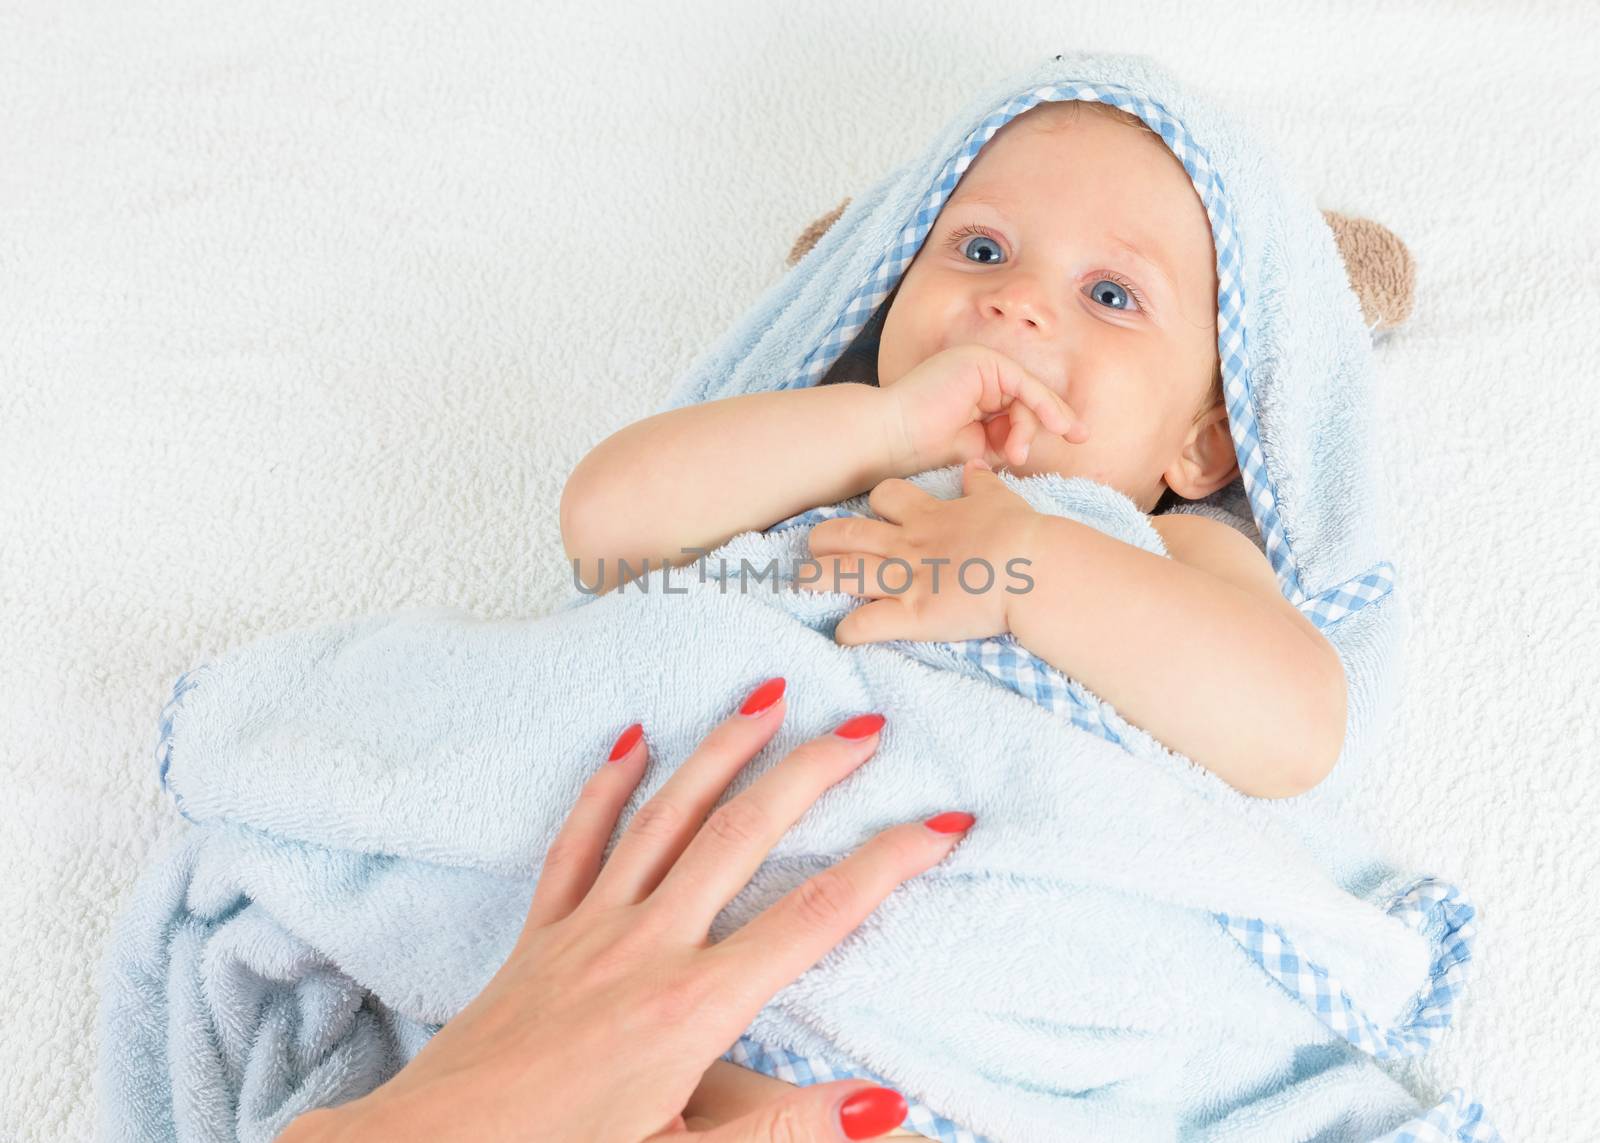 Infant boy after bath by Robertobinetti70